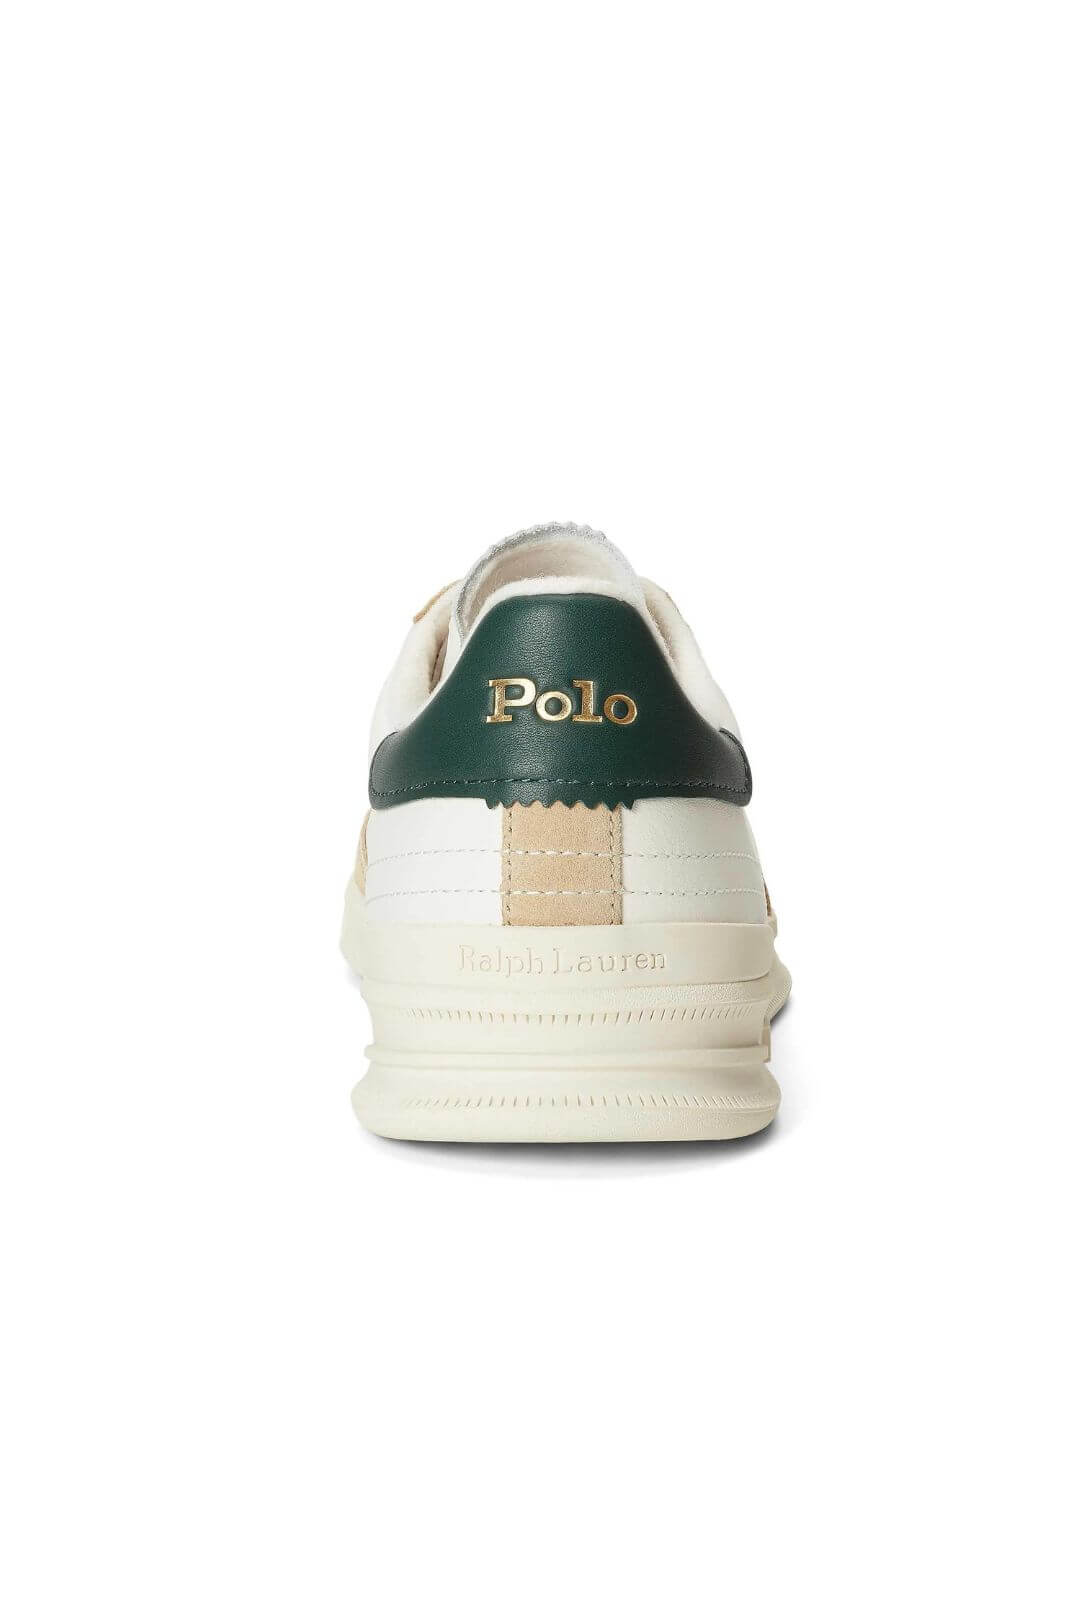 Polo Ralph Lauren sneakers uomo con dettagli in nabuck